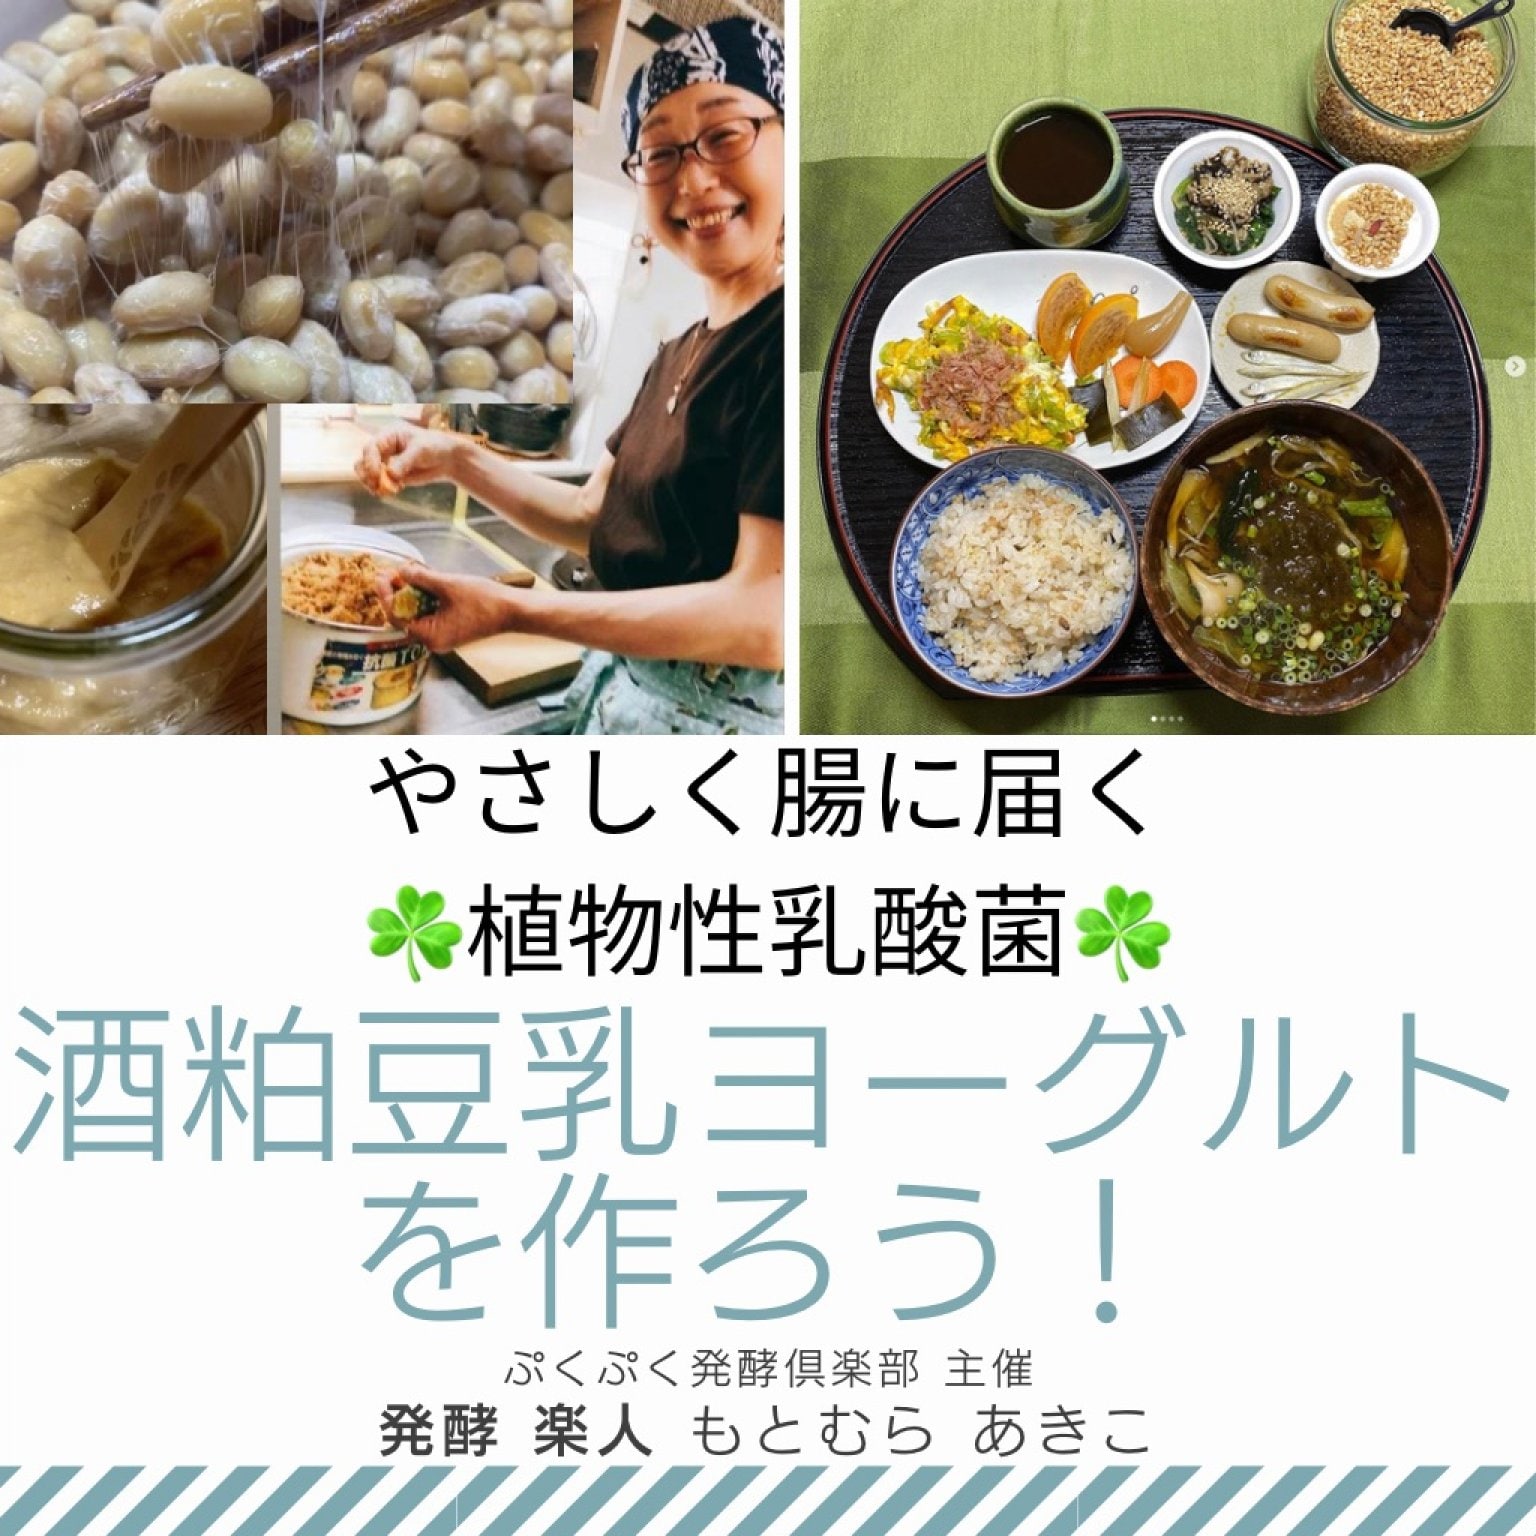 「酒粕豆乳ヨーグルト」を作ろう♪オンラインワークショップ☆日本人の腸にやさしく届く植物性乳酸菌 | ぷくぷく発酵倶楽部